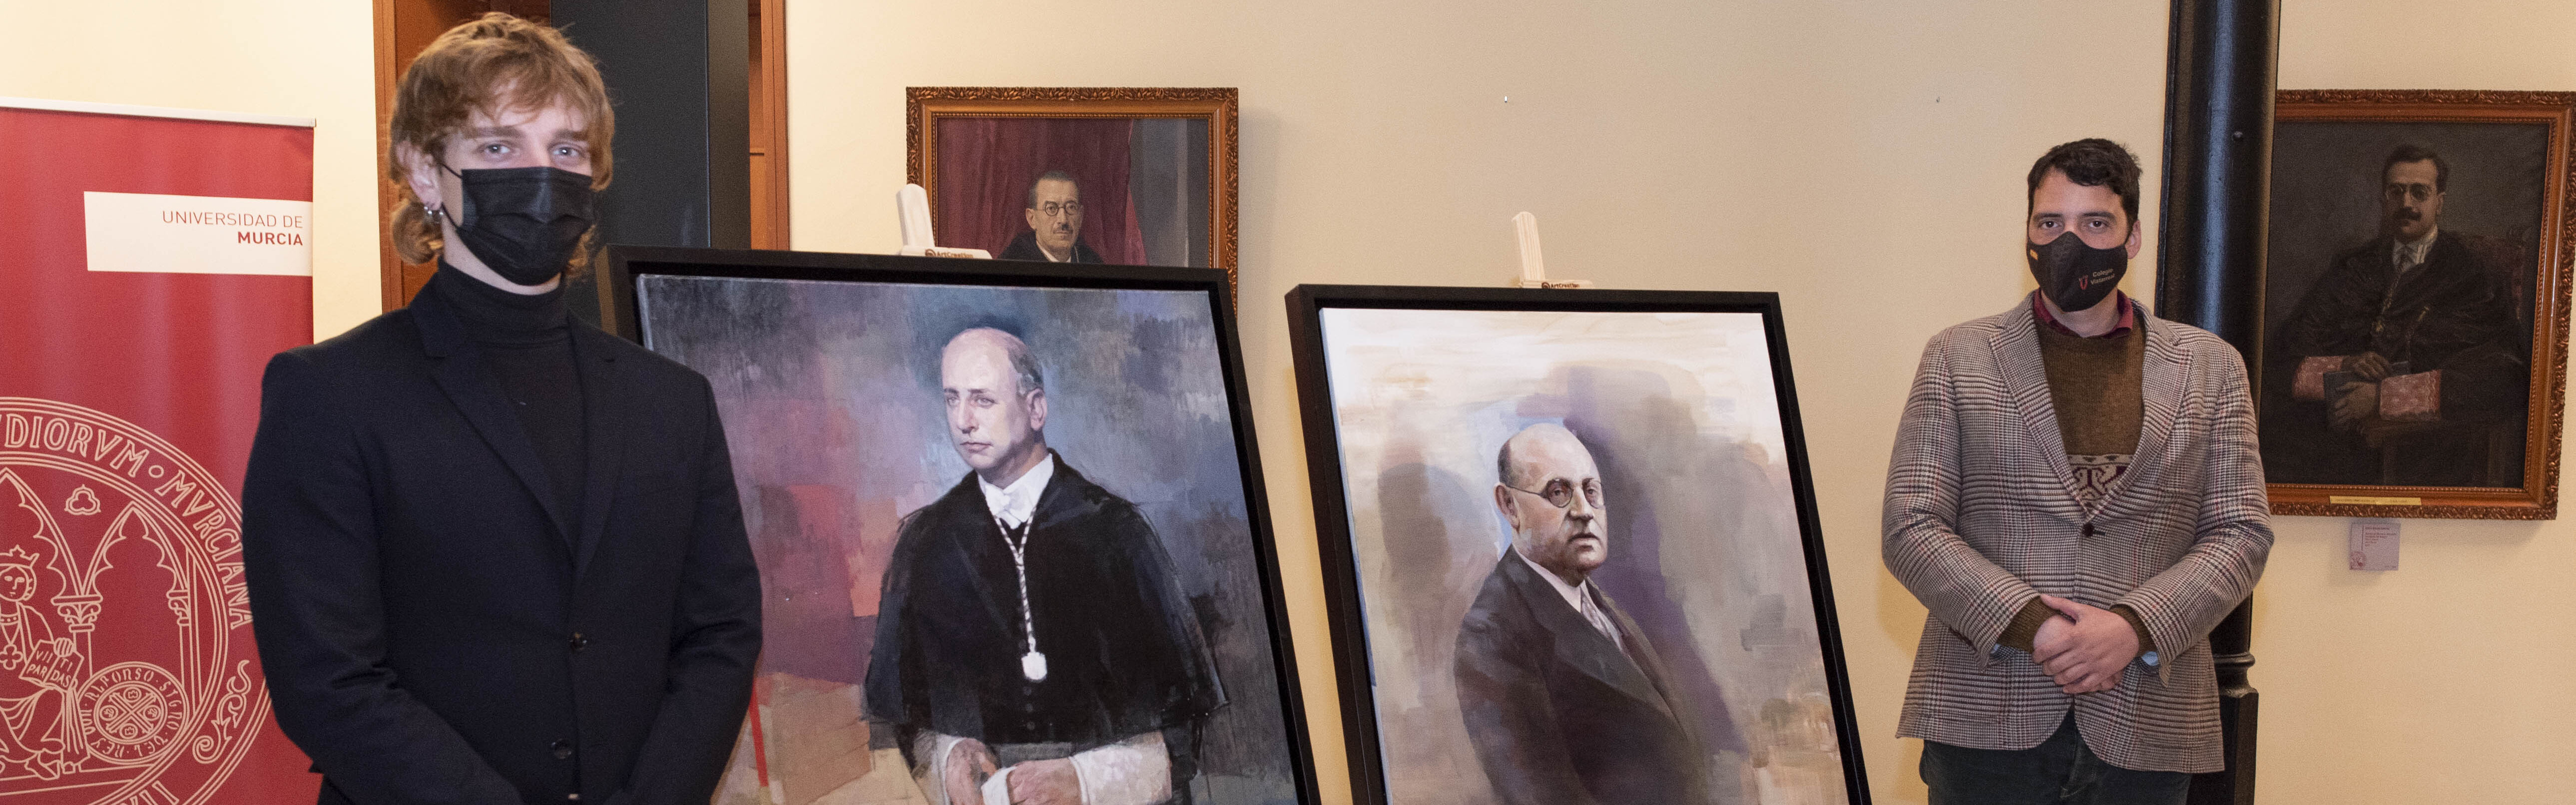 La Universidad de Murcia incorpora a su Galería los retratos de los dos rectores de la institución durante la Guerra Civil